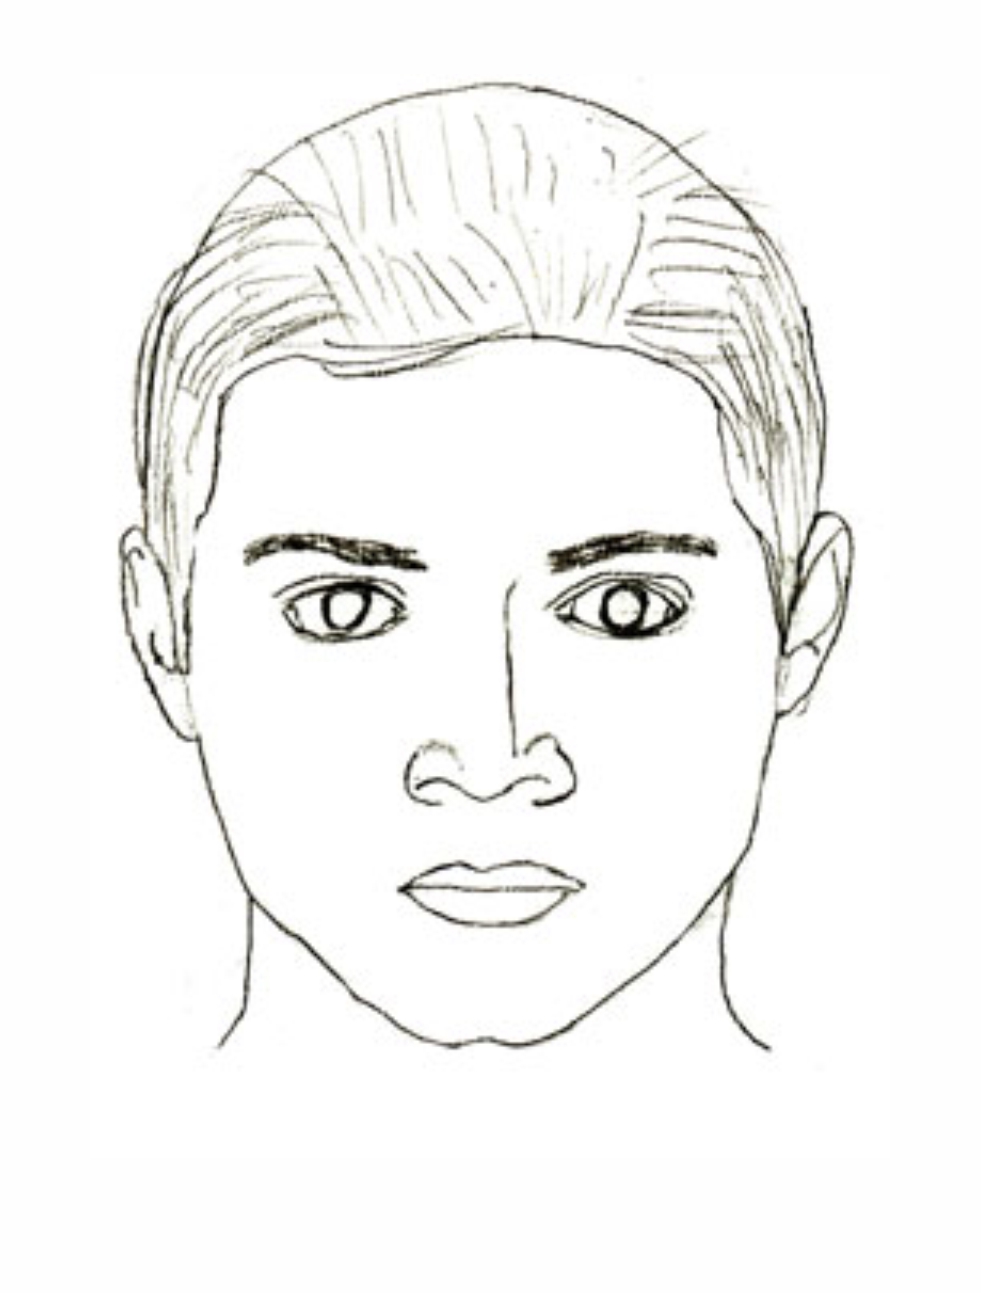 Урок рисования: Как нарисовать лицо человека поэтапно карандашом. 5 этап